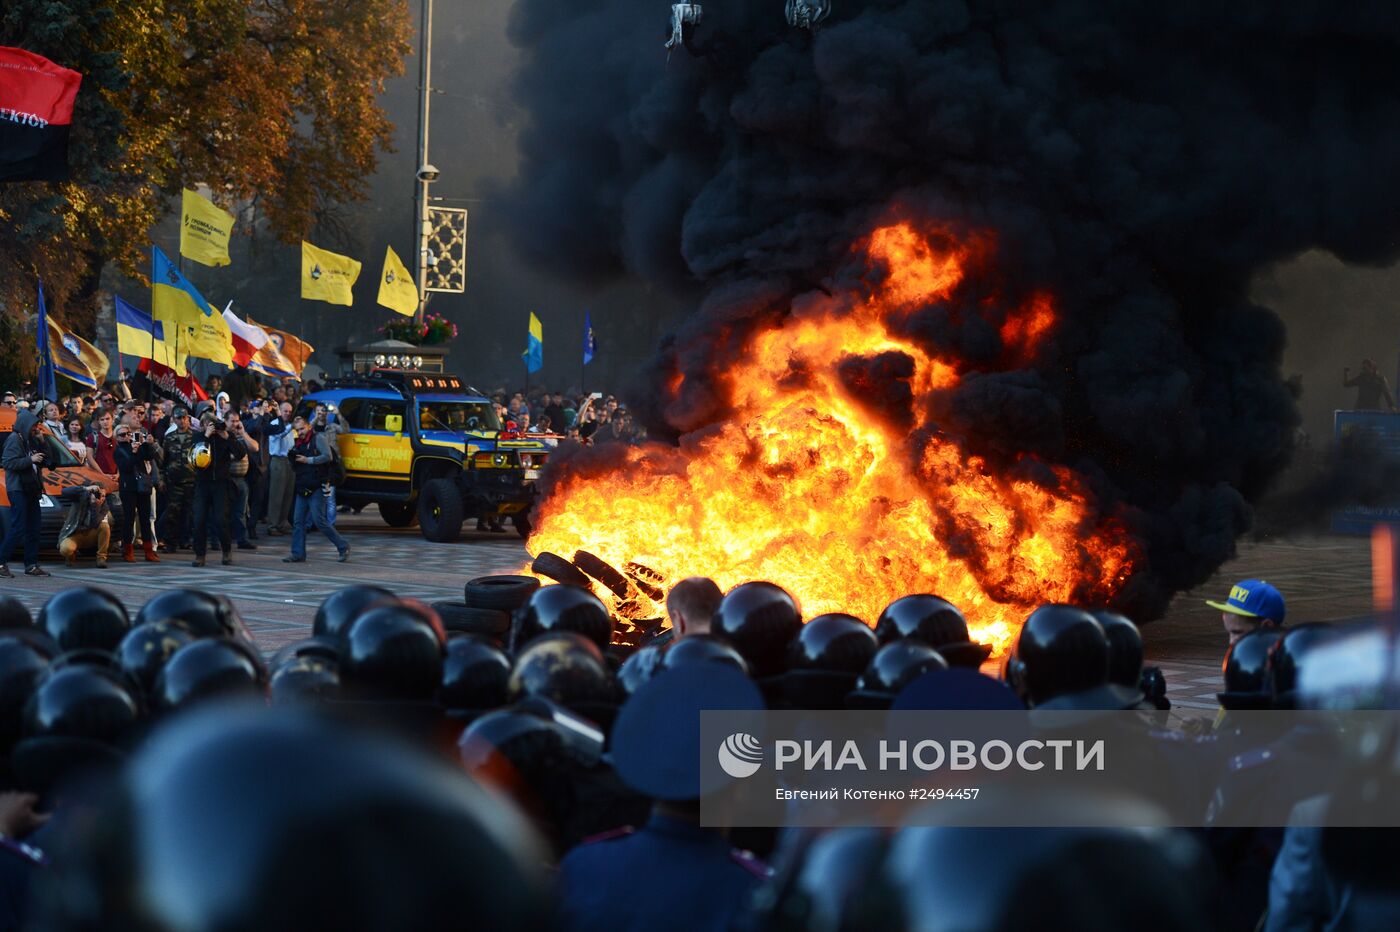 Пикет в поддержку закона о люстрации власти в Киеве